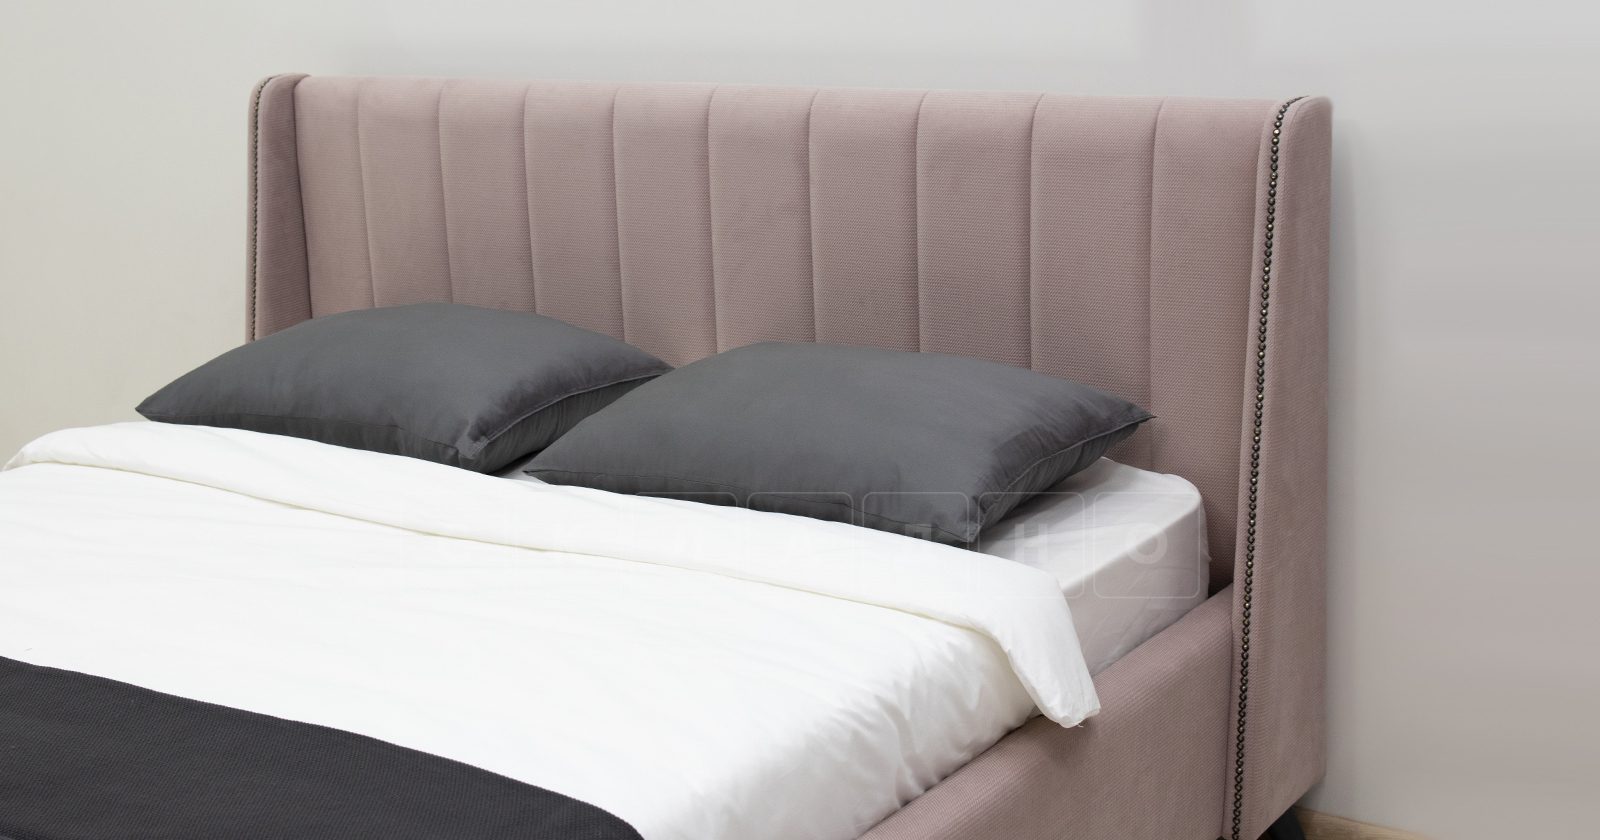 Мягкая кровать Мелисса 160 см велюр ява фото 6 | интернет-магазин Складно